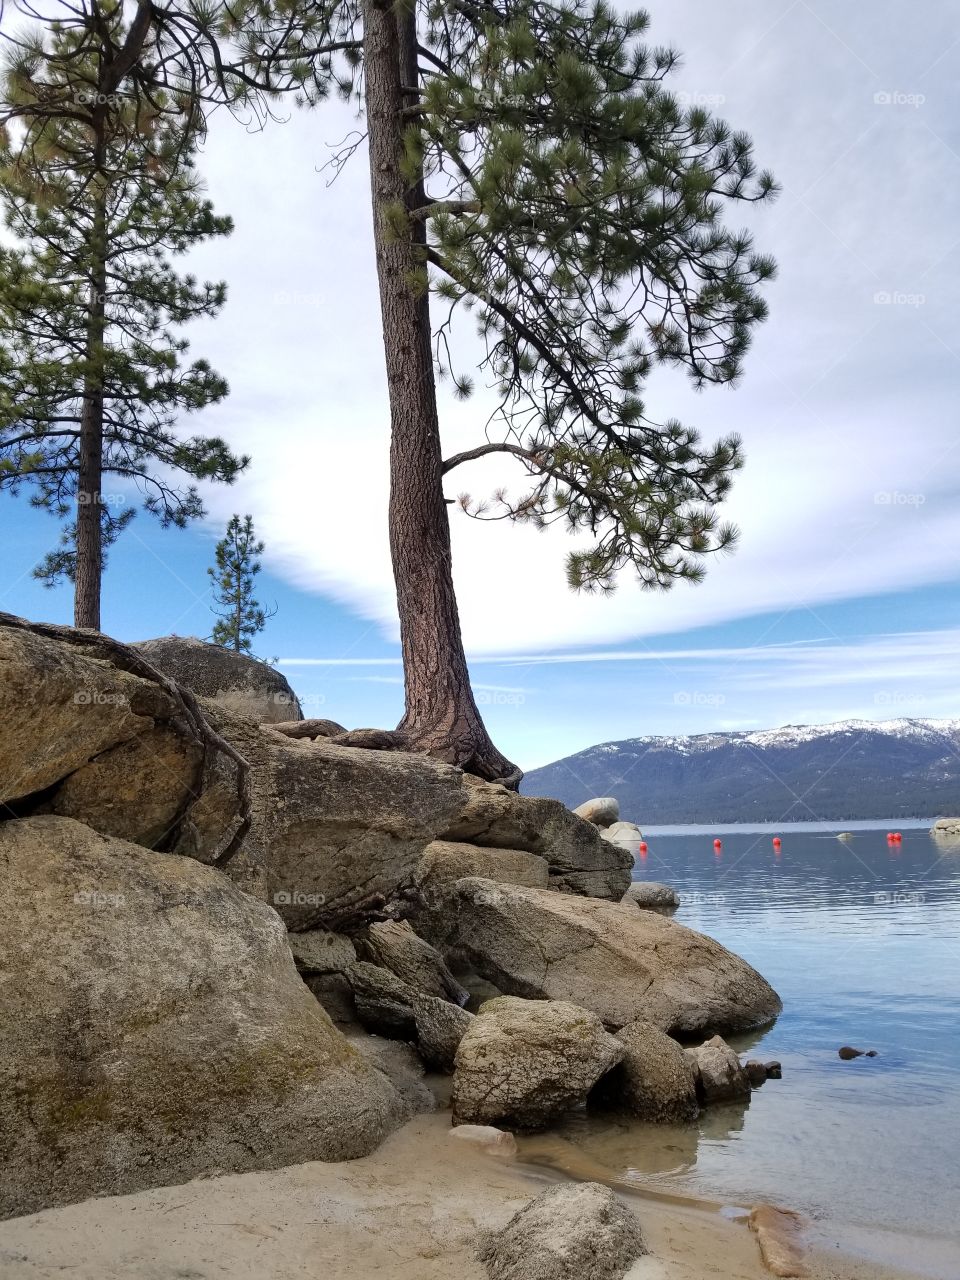 Views of Lake Tahoe, NV